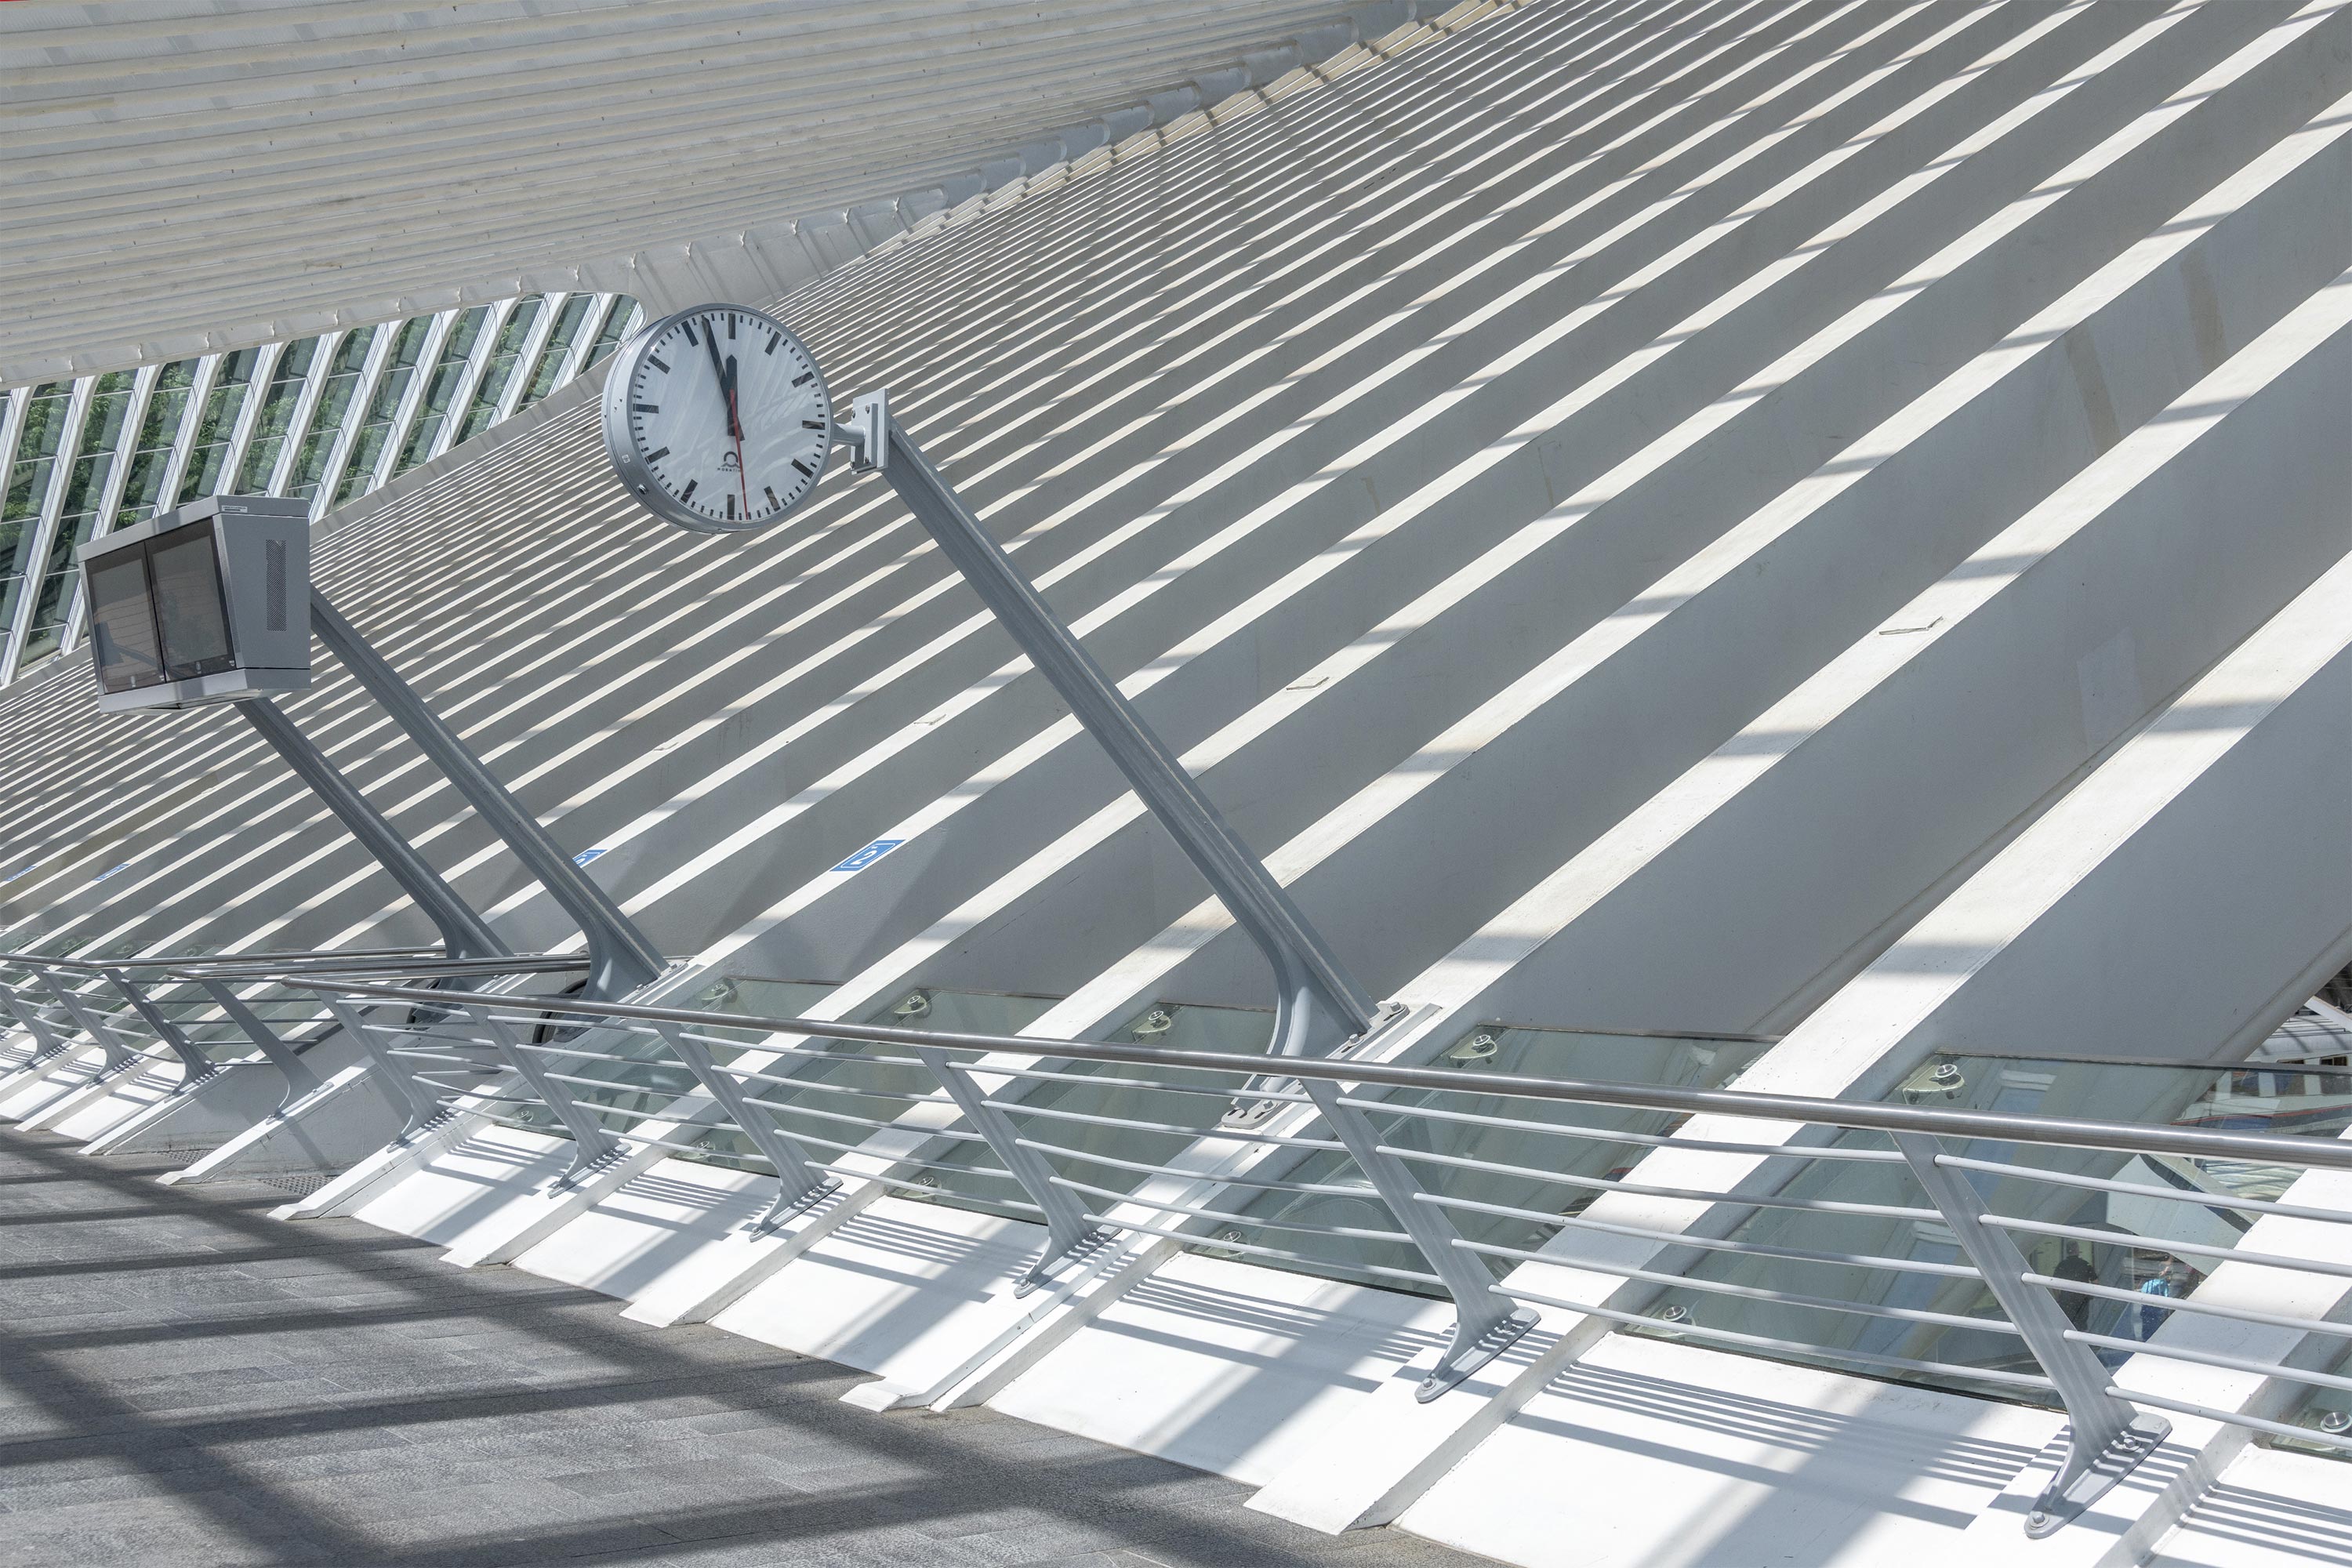 Liege Guillemins Station by Santiago Calatrava shot by WaltonCreative